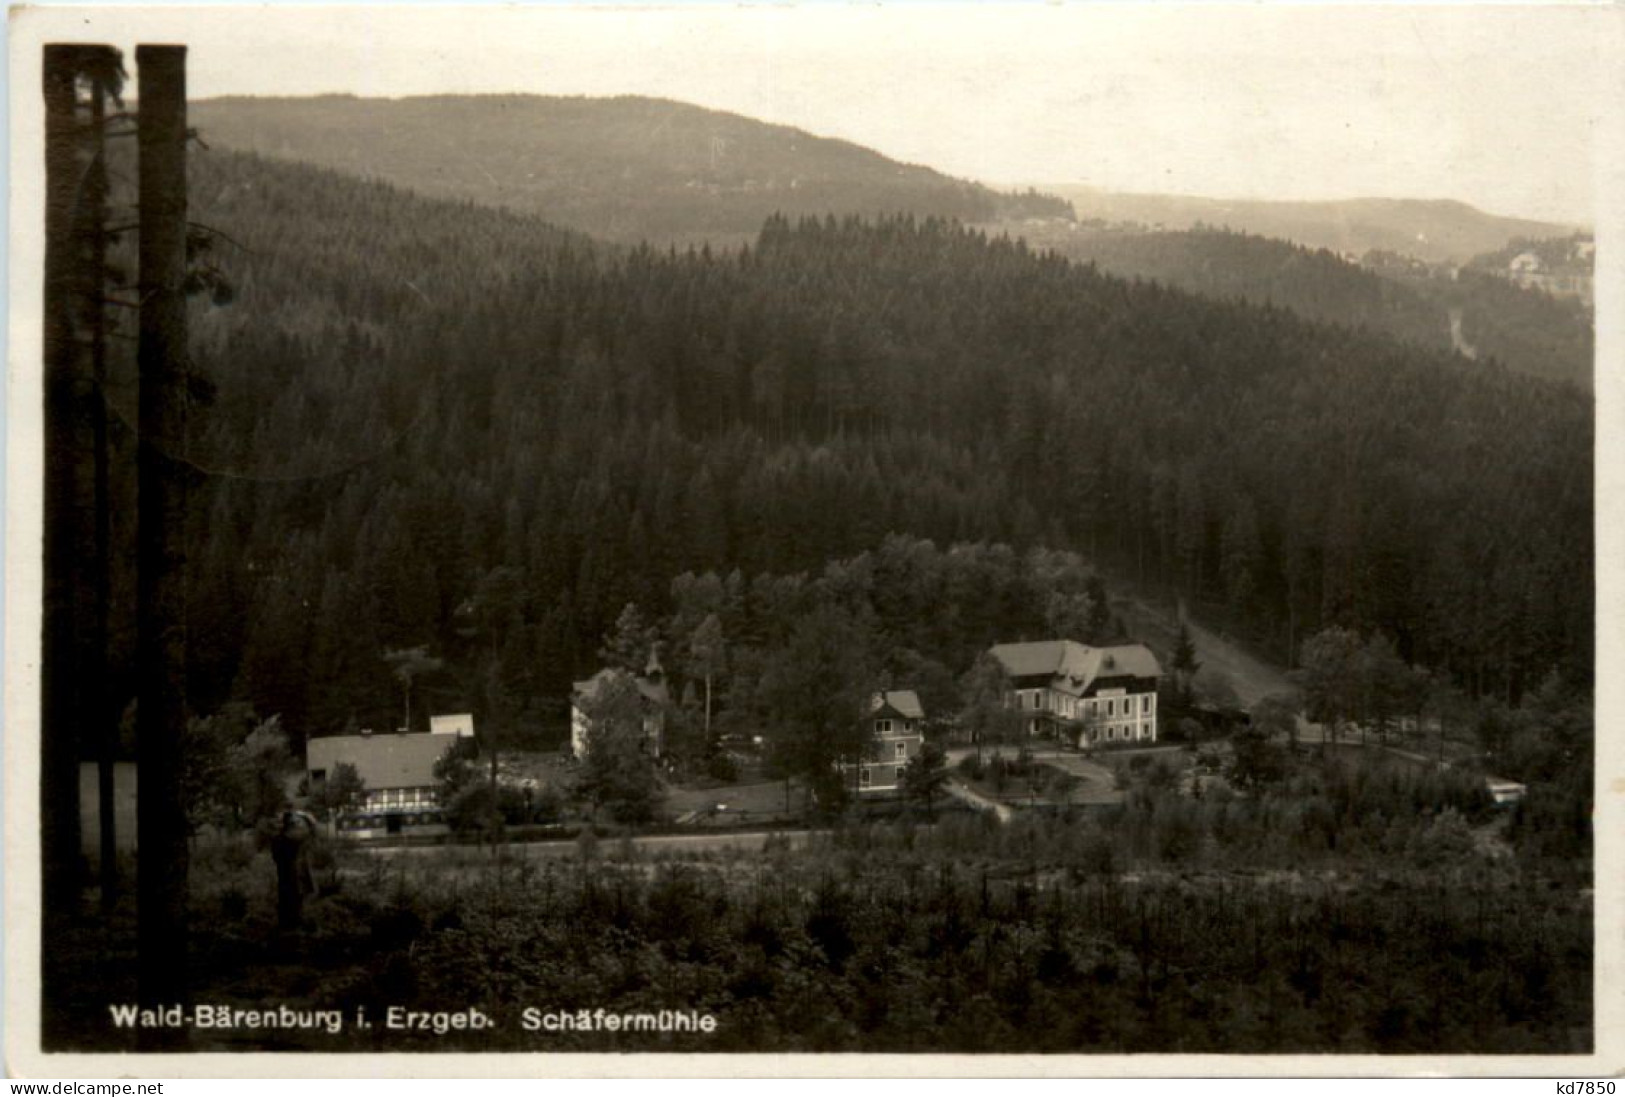 Wald-Bärenburg, Schäfermühle - Altenberg